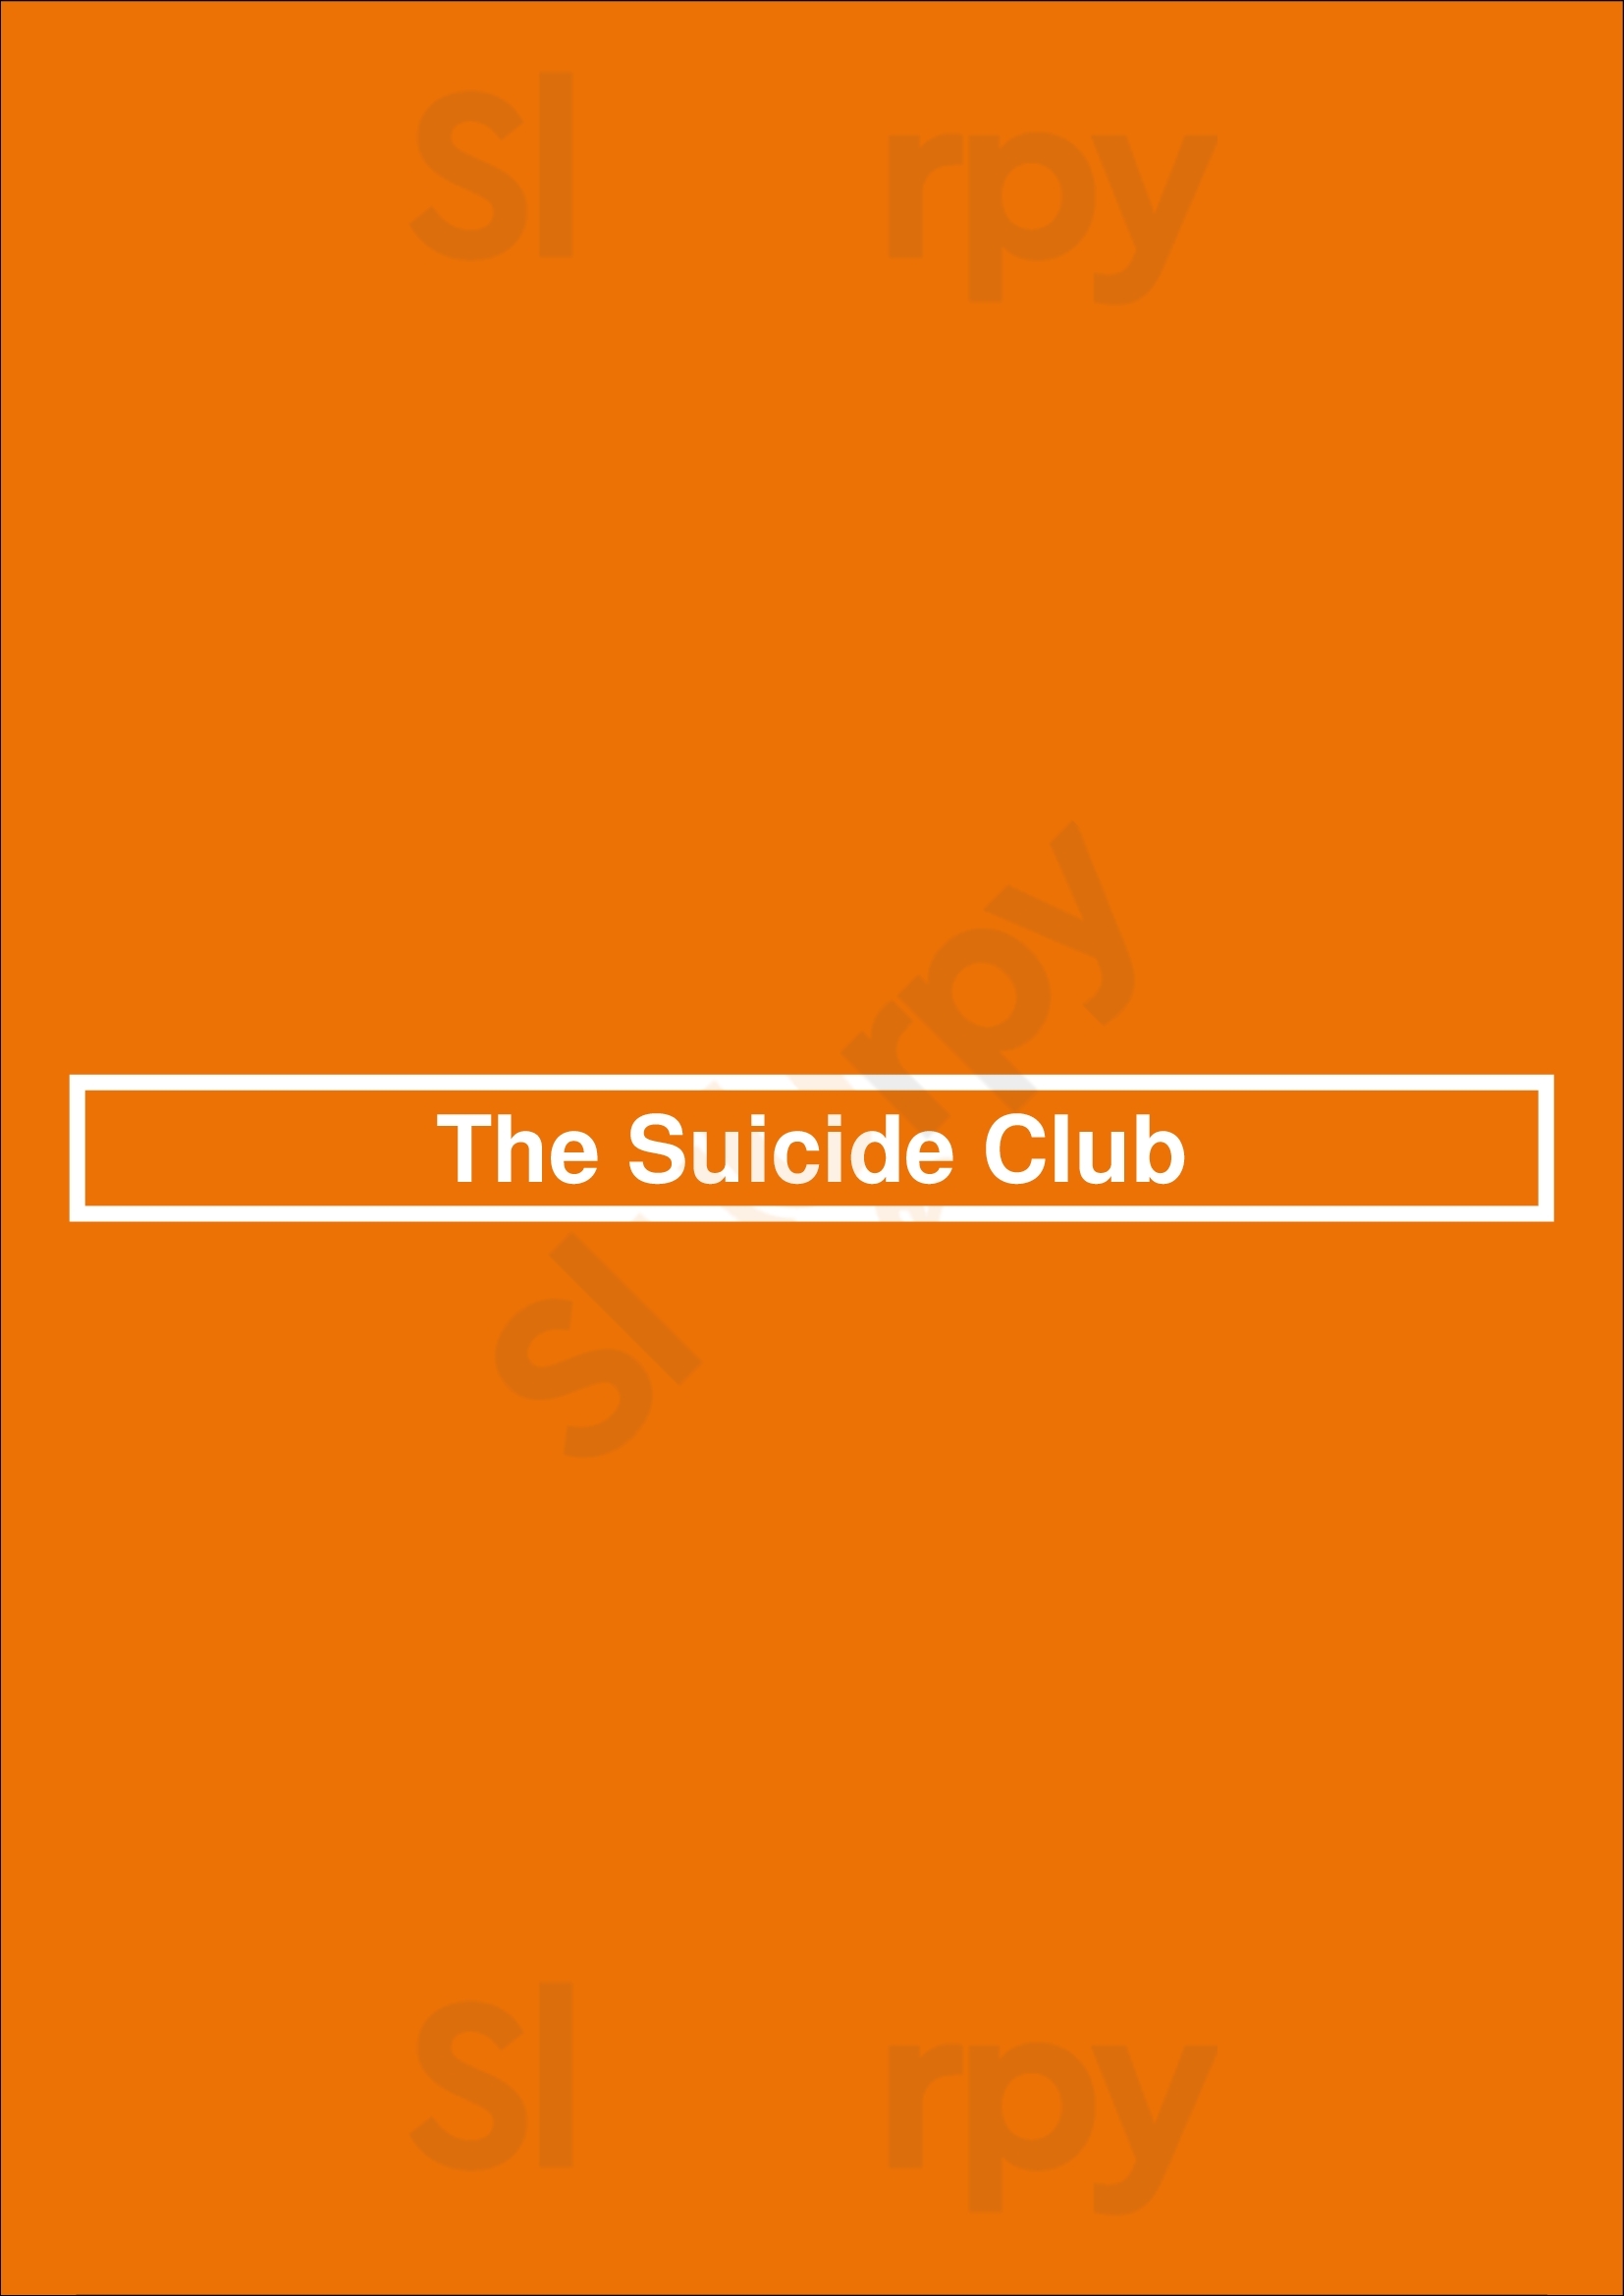 The Suicide Club Rotterdam Menu - 1